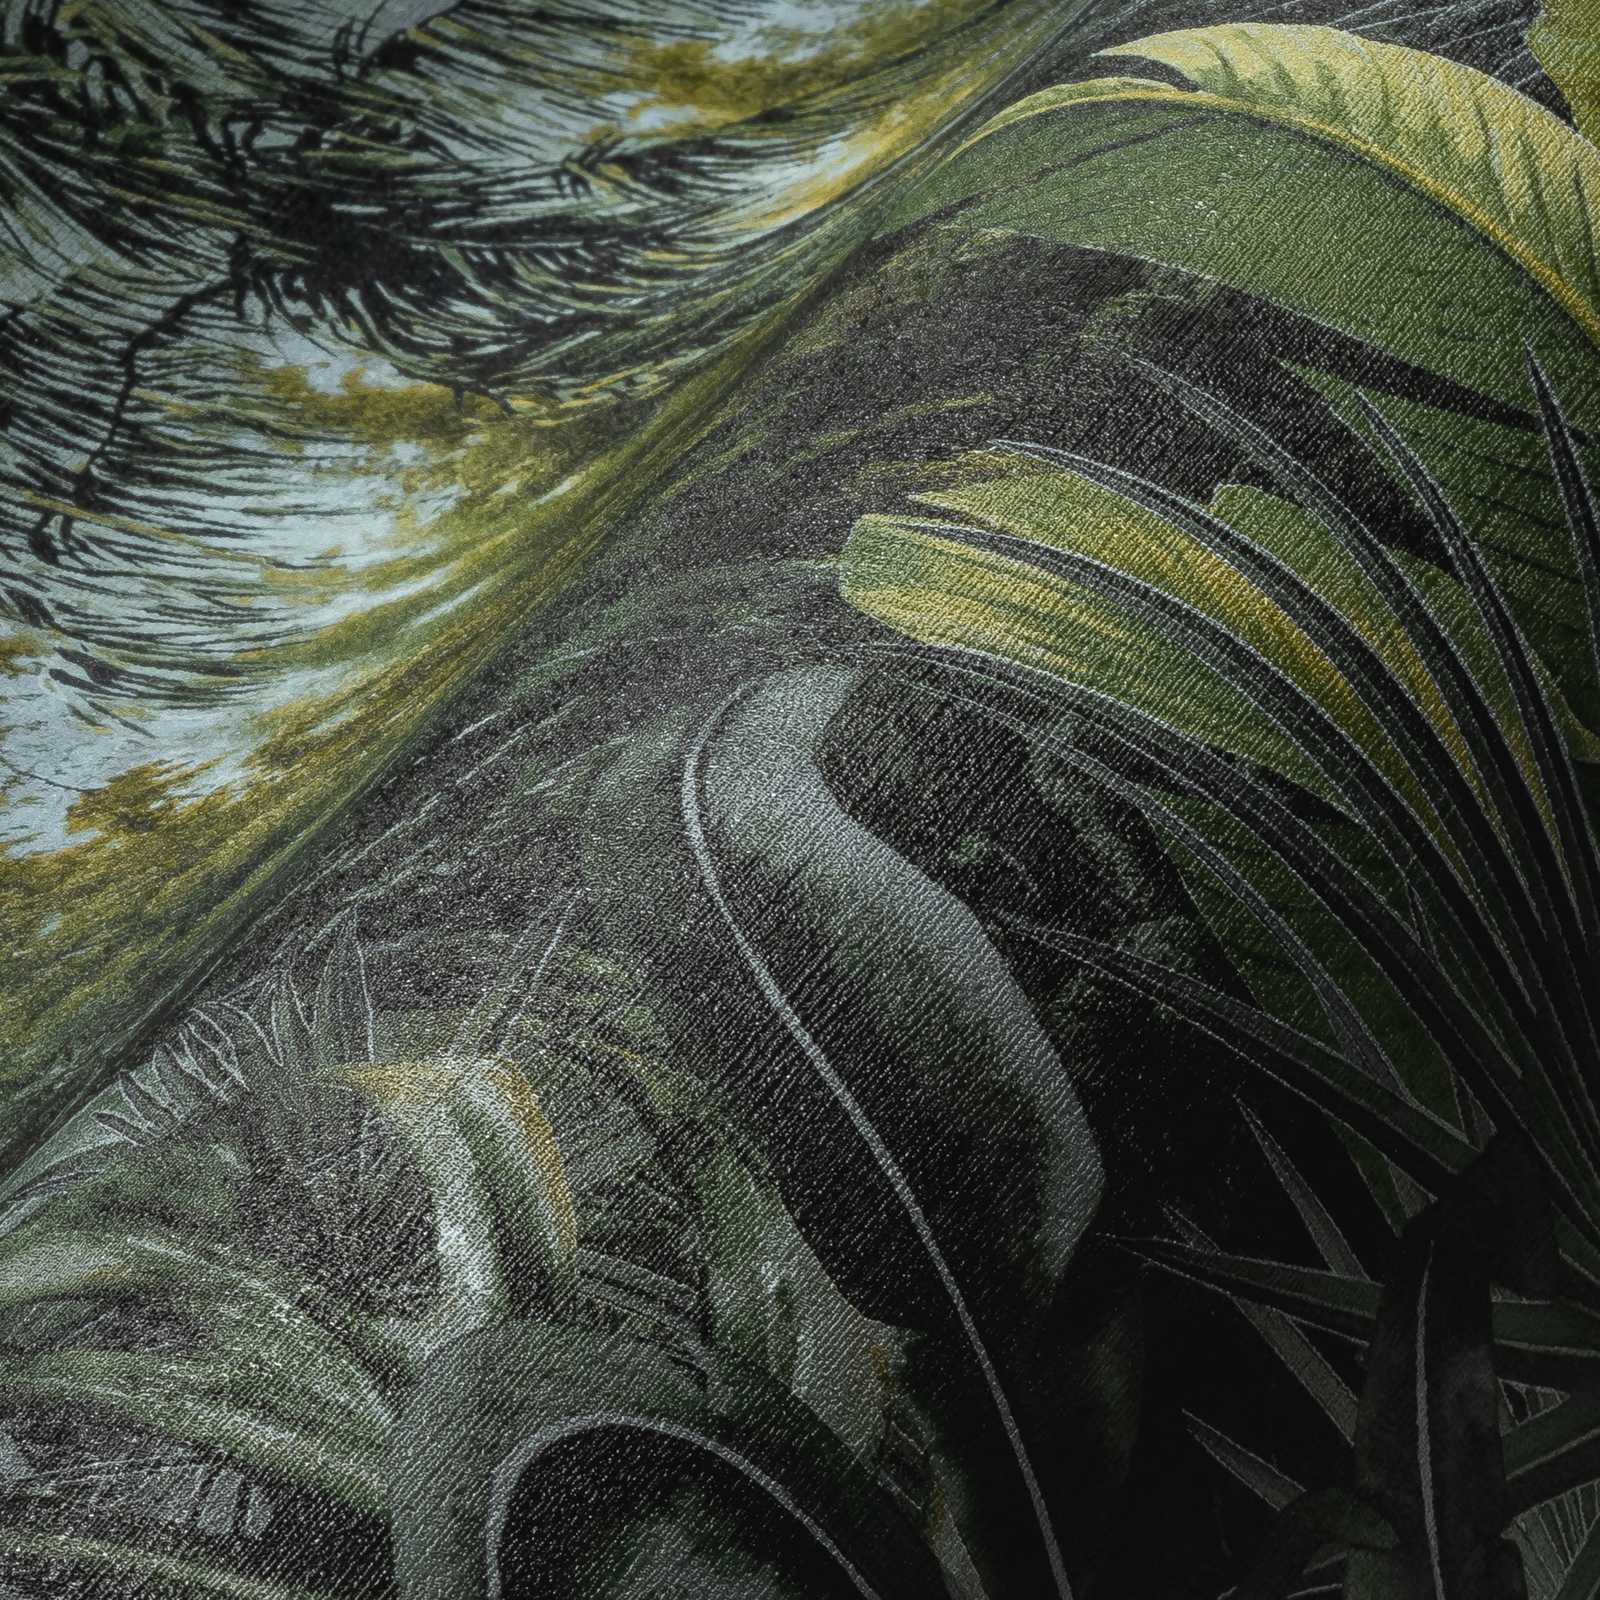             Vliestapete Dschungel mit Palmen & Blätter Design – Grün
        